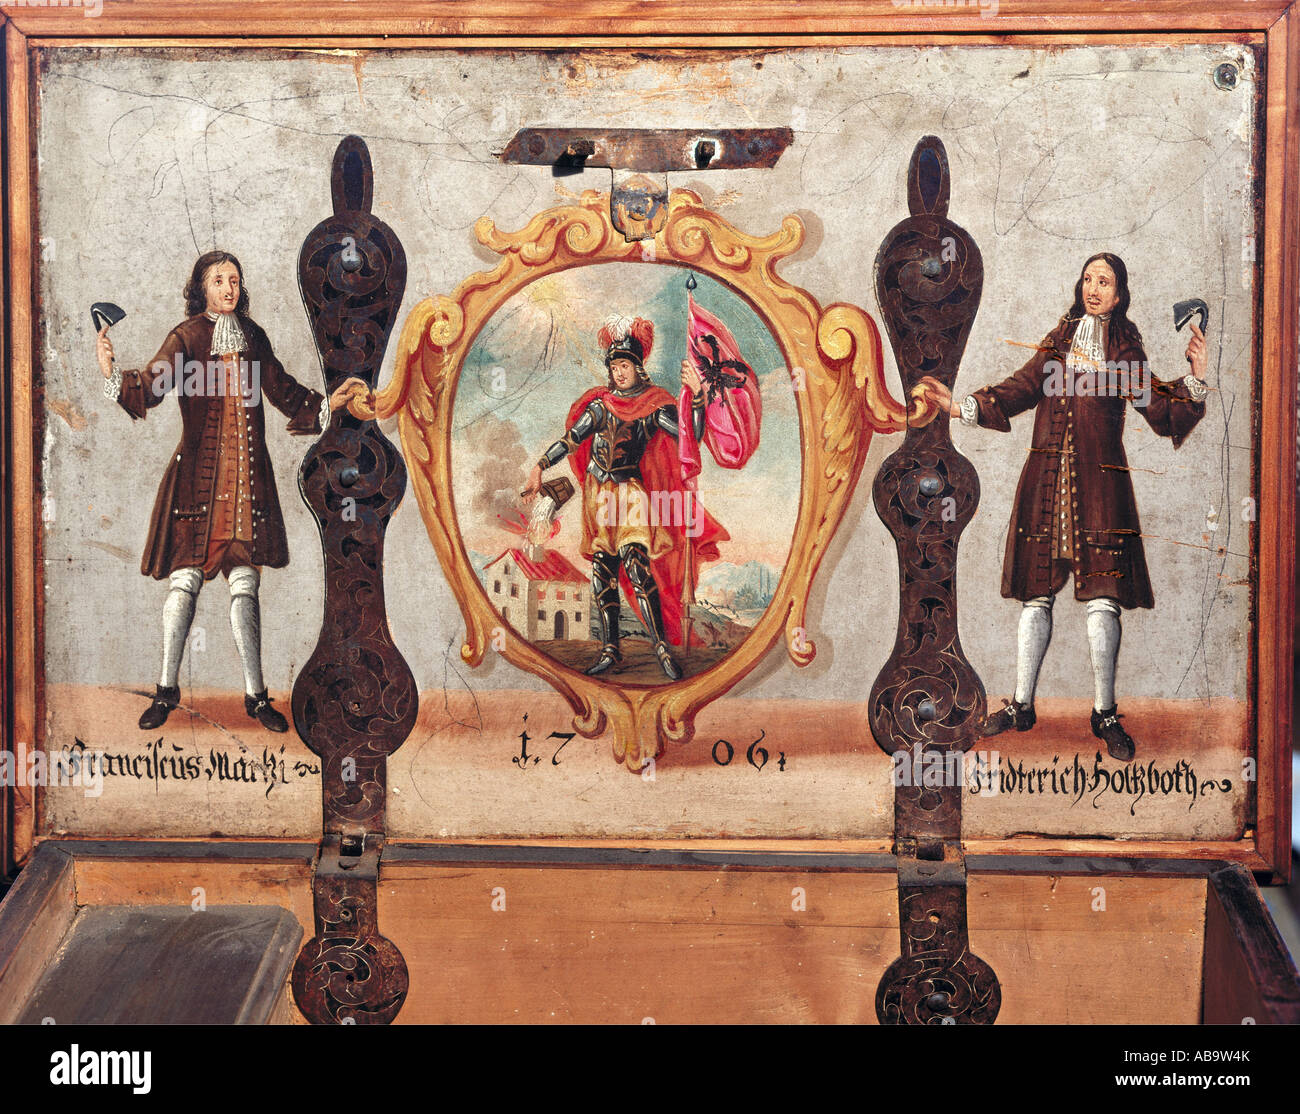 Artigianato, gilde, maestri di giocolieri Franciscus Märtzi e Friedrich Holzboth con San Floriano, pittura, all'interno di un tronco, Germania meridionale, 1706, Foto Stock